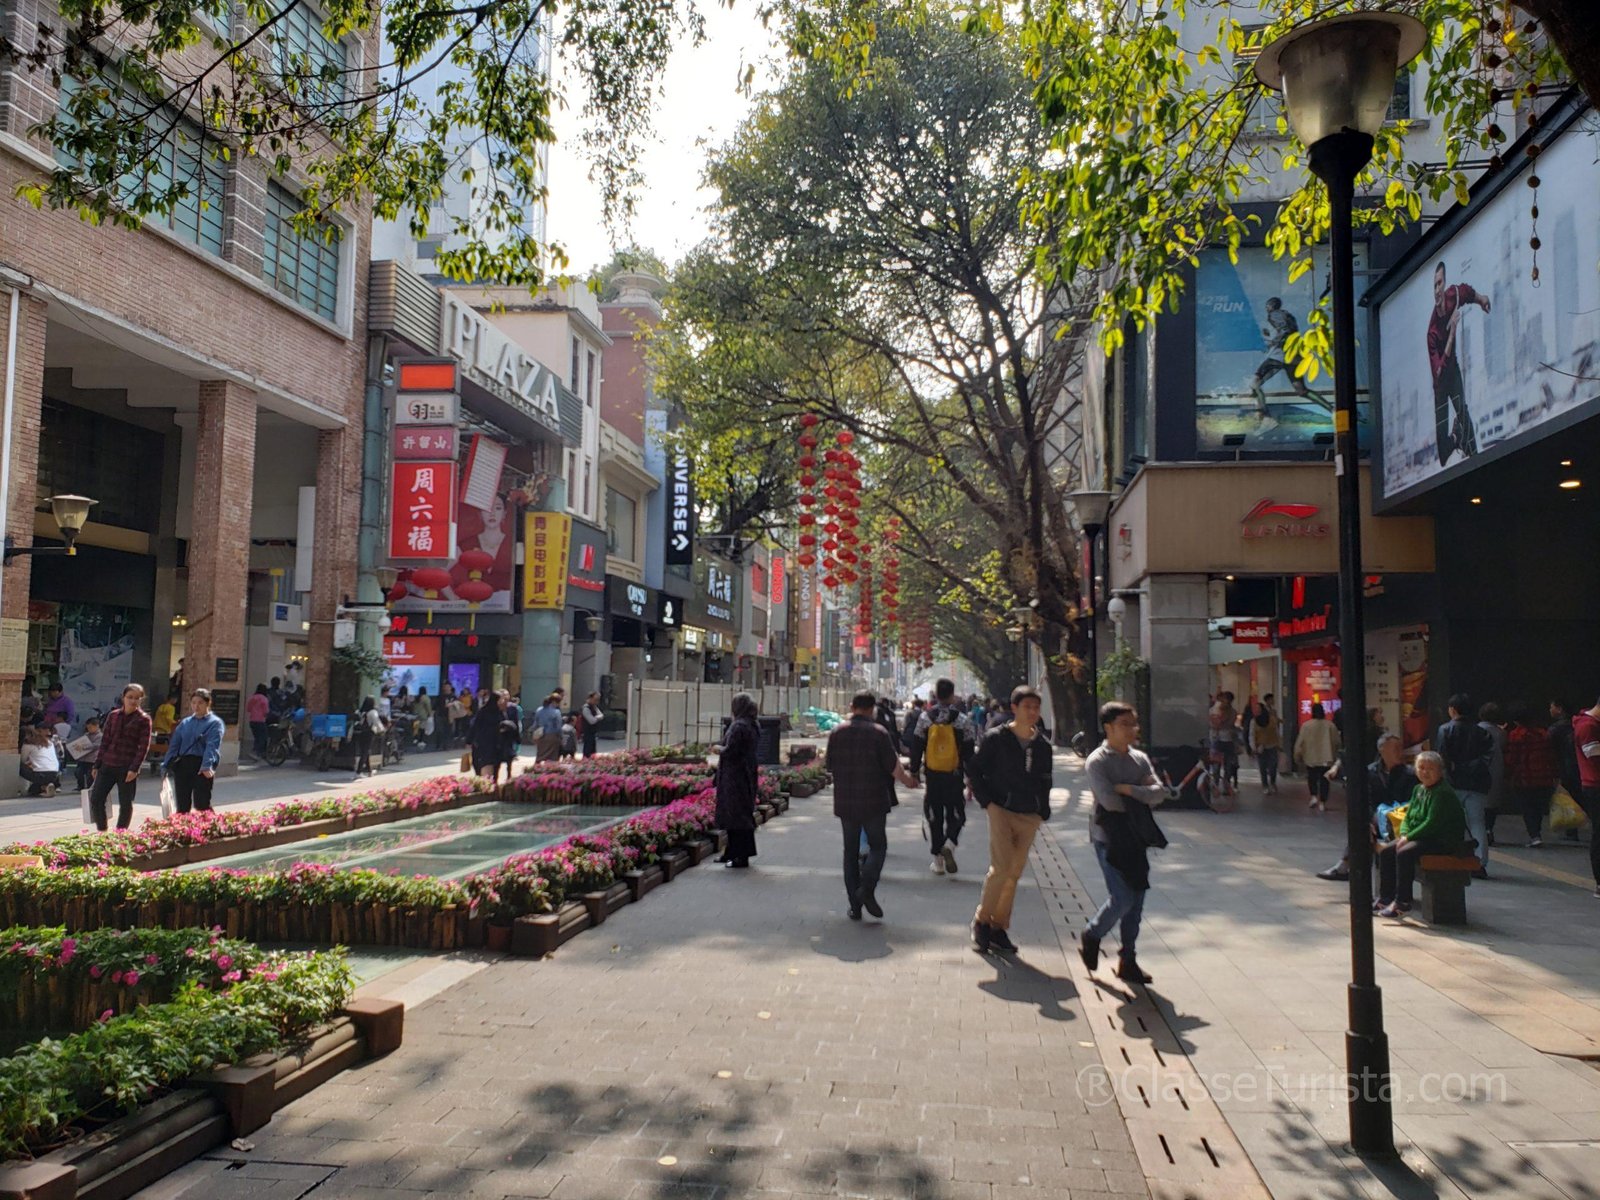 Beijing Lu, Guangzhou, China